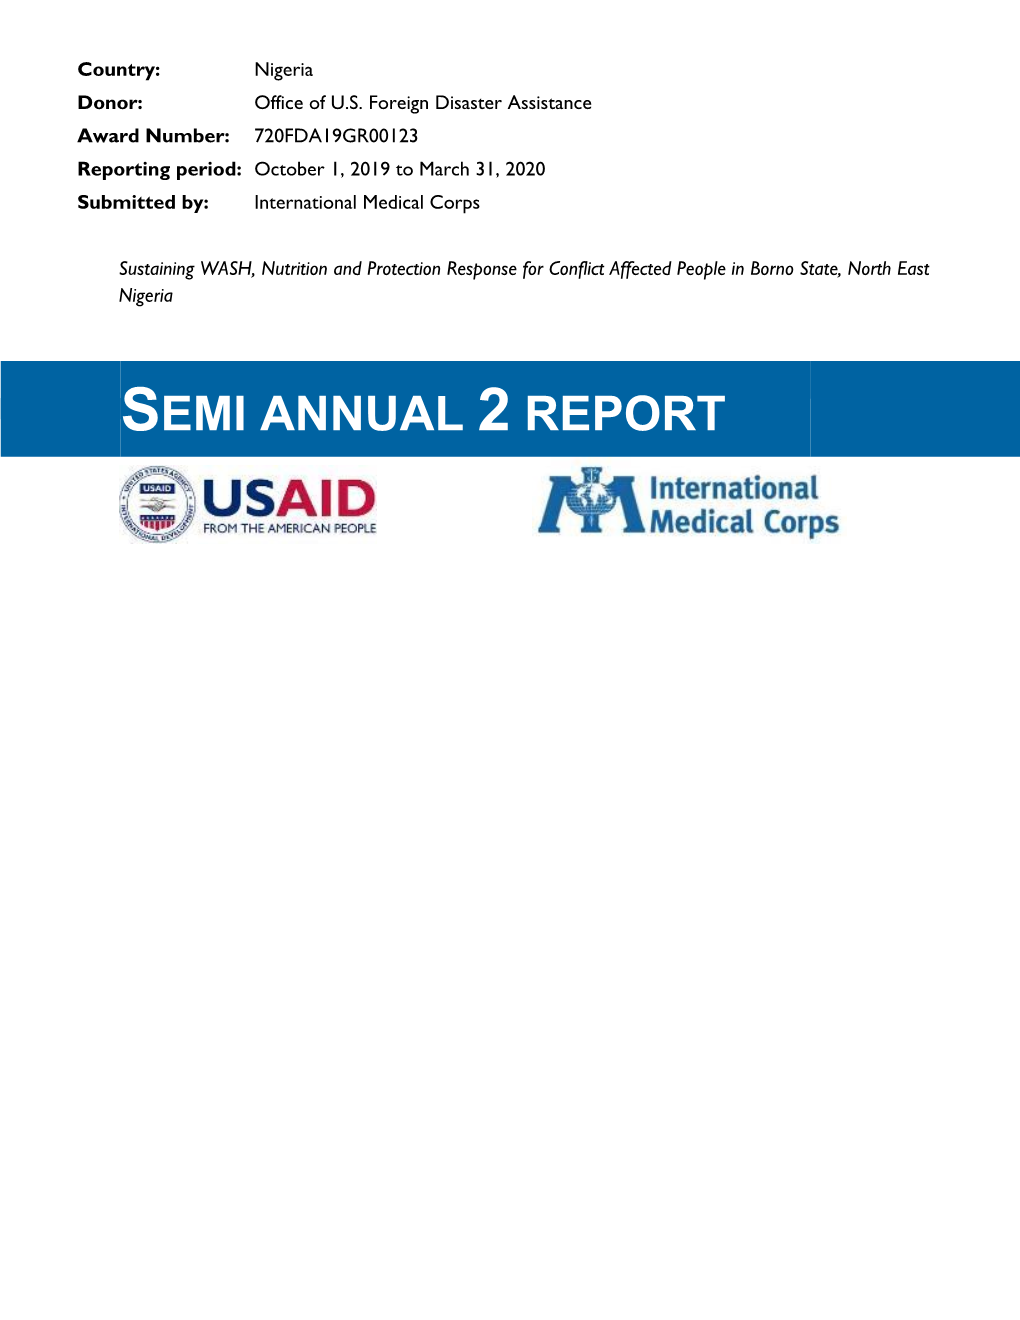 Semi Annual 2 Report